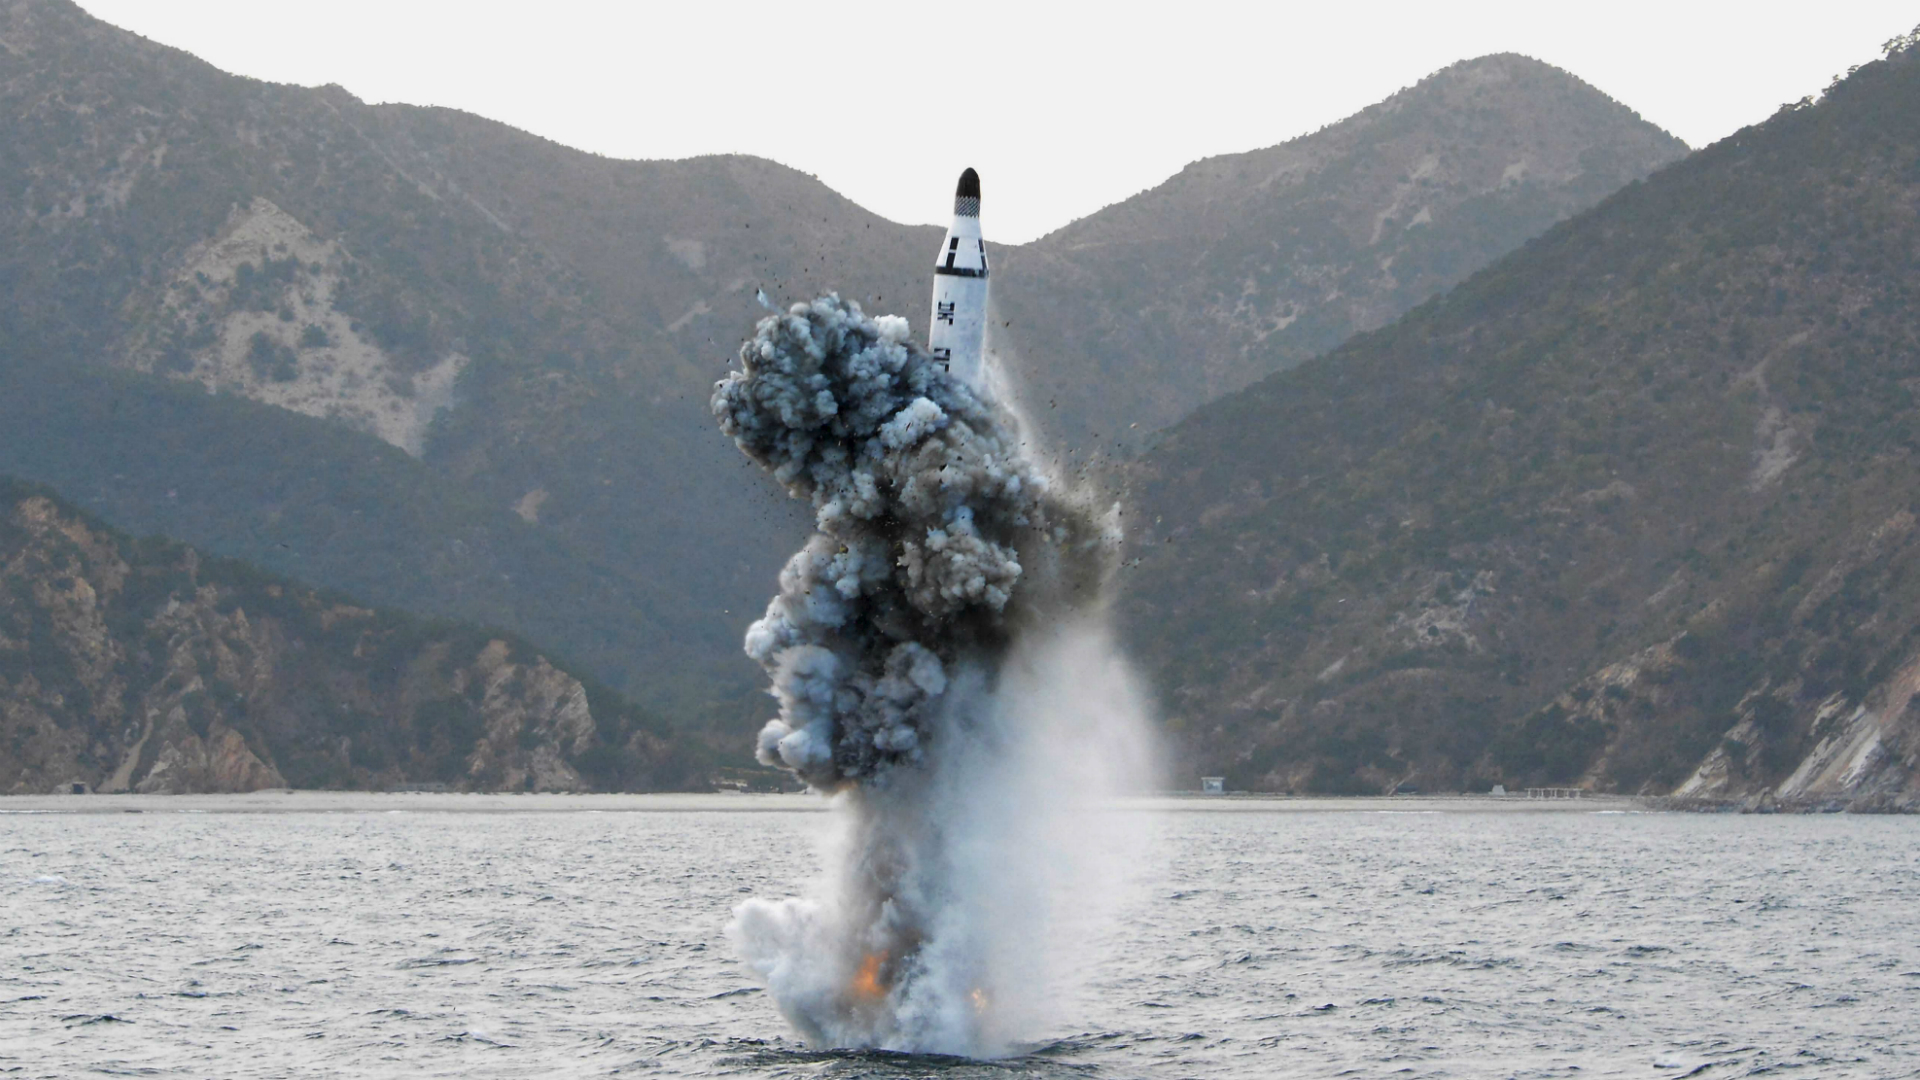 Corea del Sur aseguró que el régimen de Kim Jong-un “pagará por sus provocaciones” tras el disparo de un dron submarino